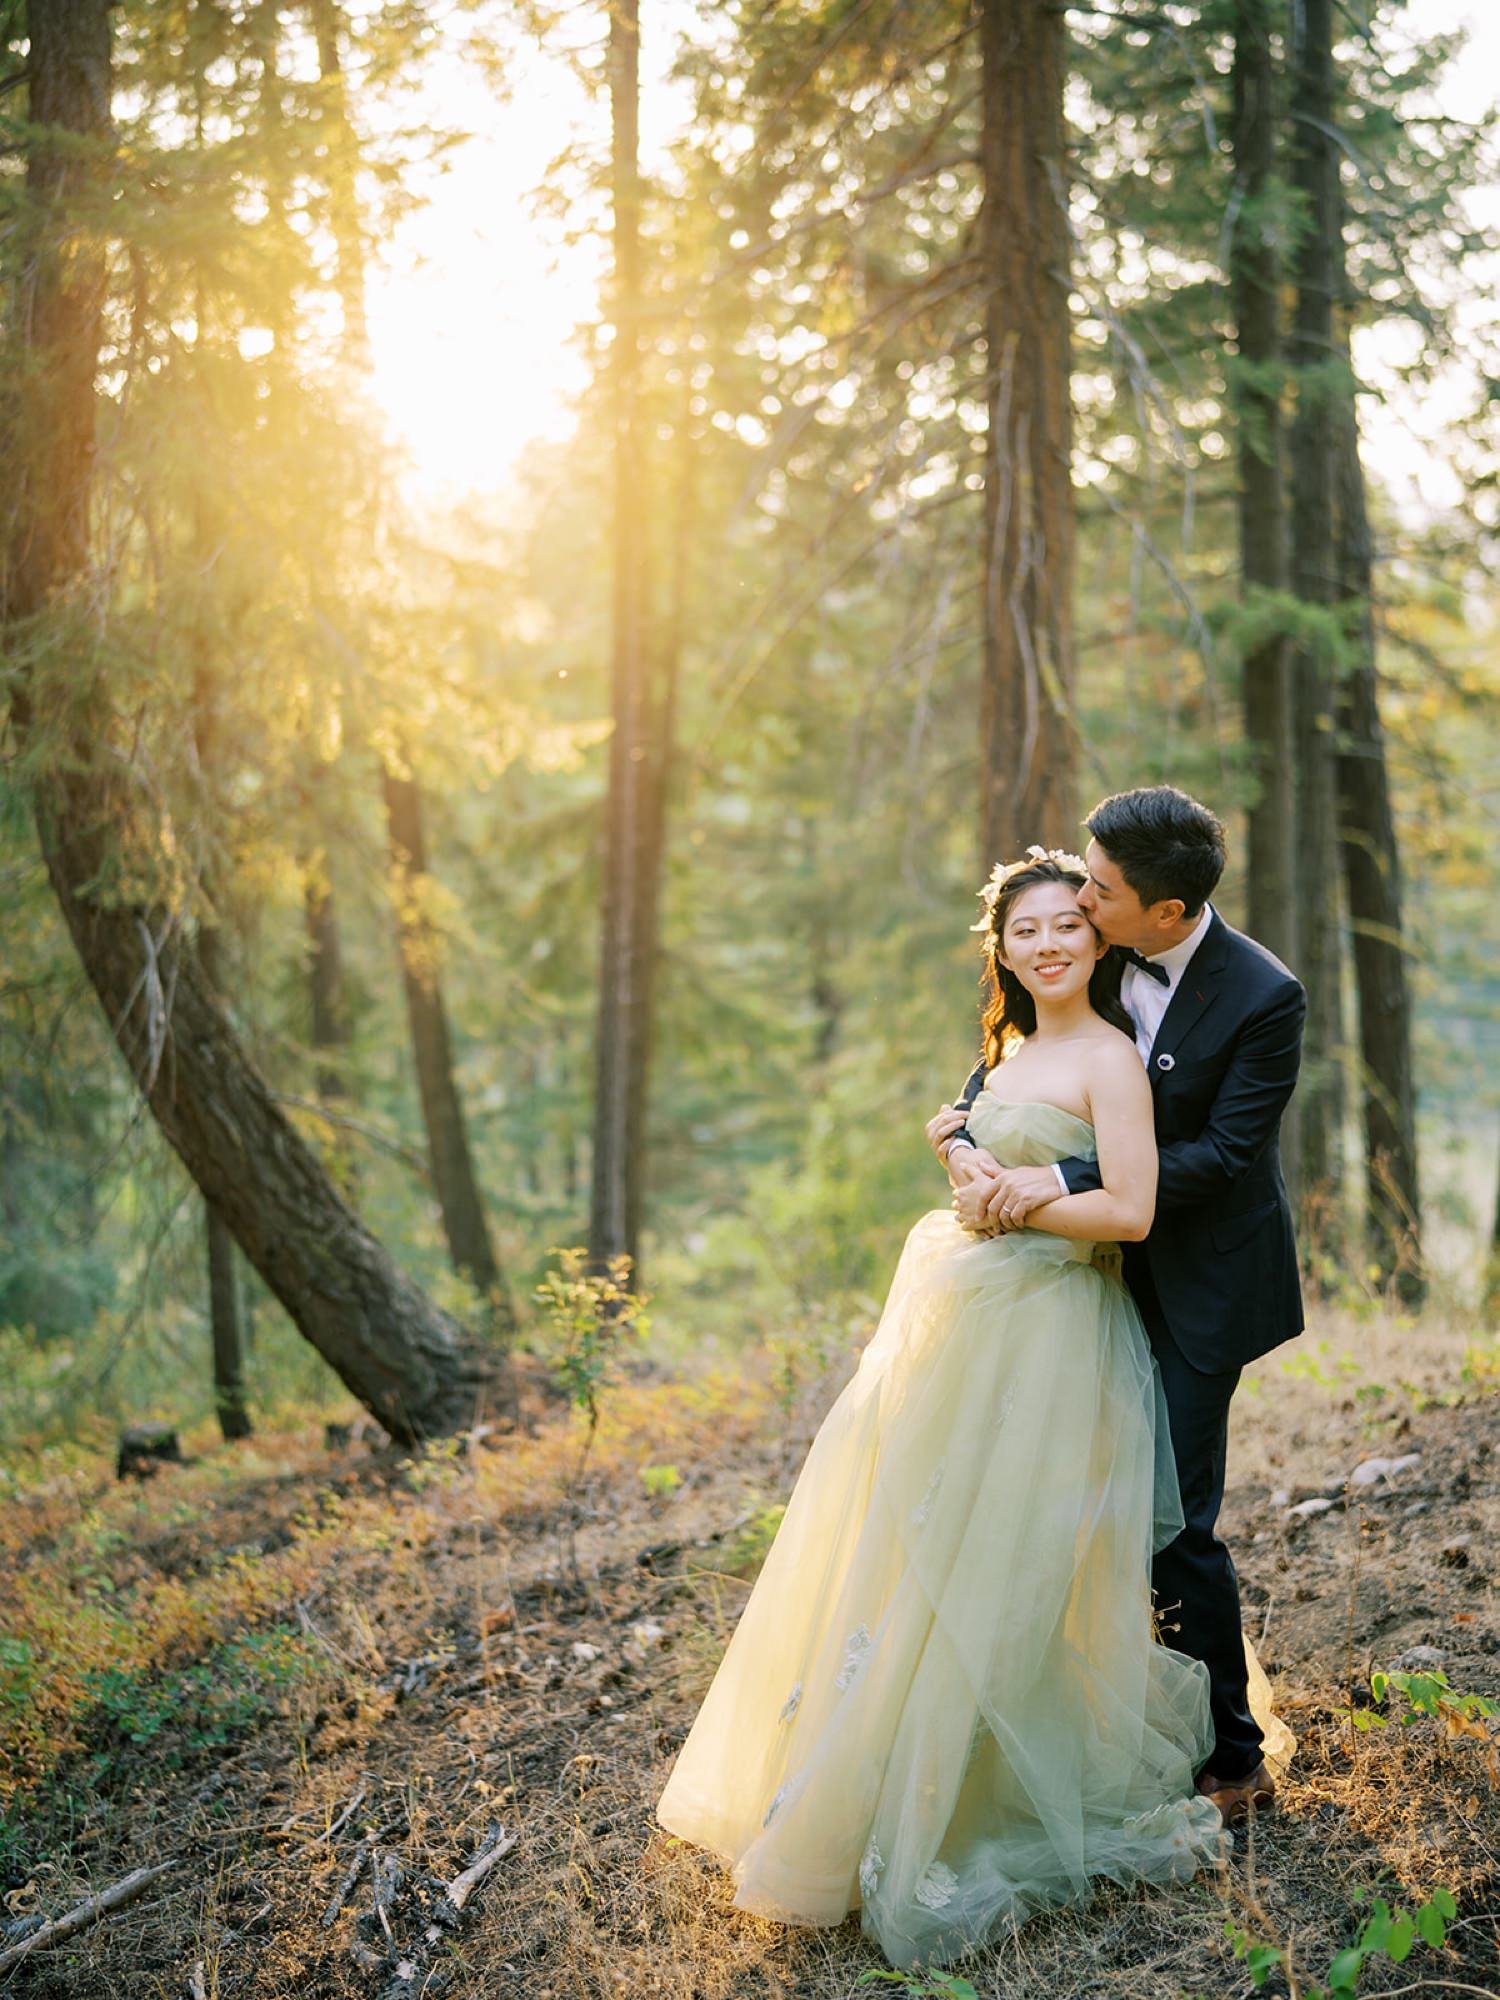 090_Leavenworth wedding photos by Top Seattle wedding photogarpher .jpg